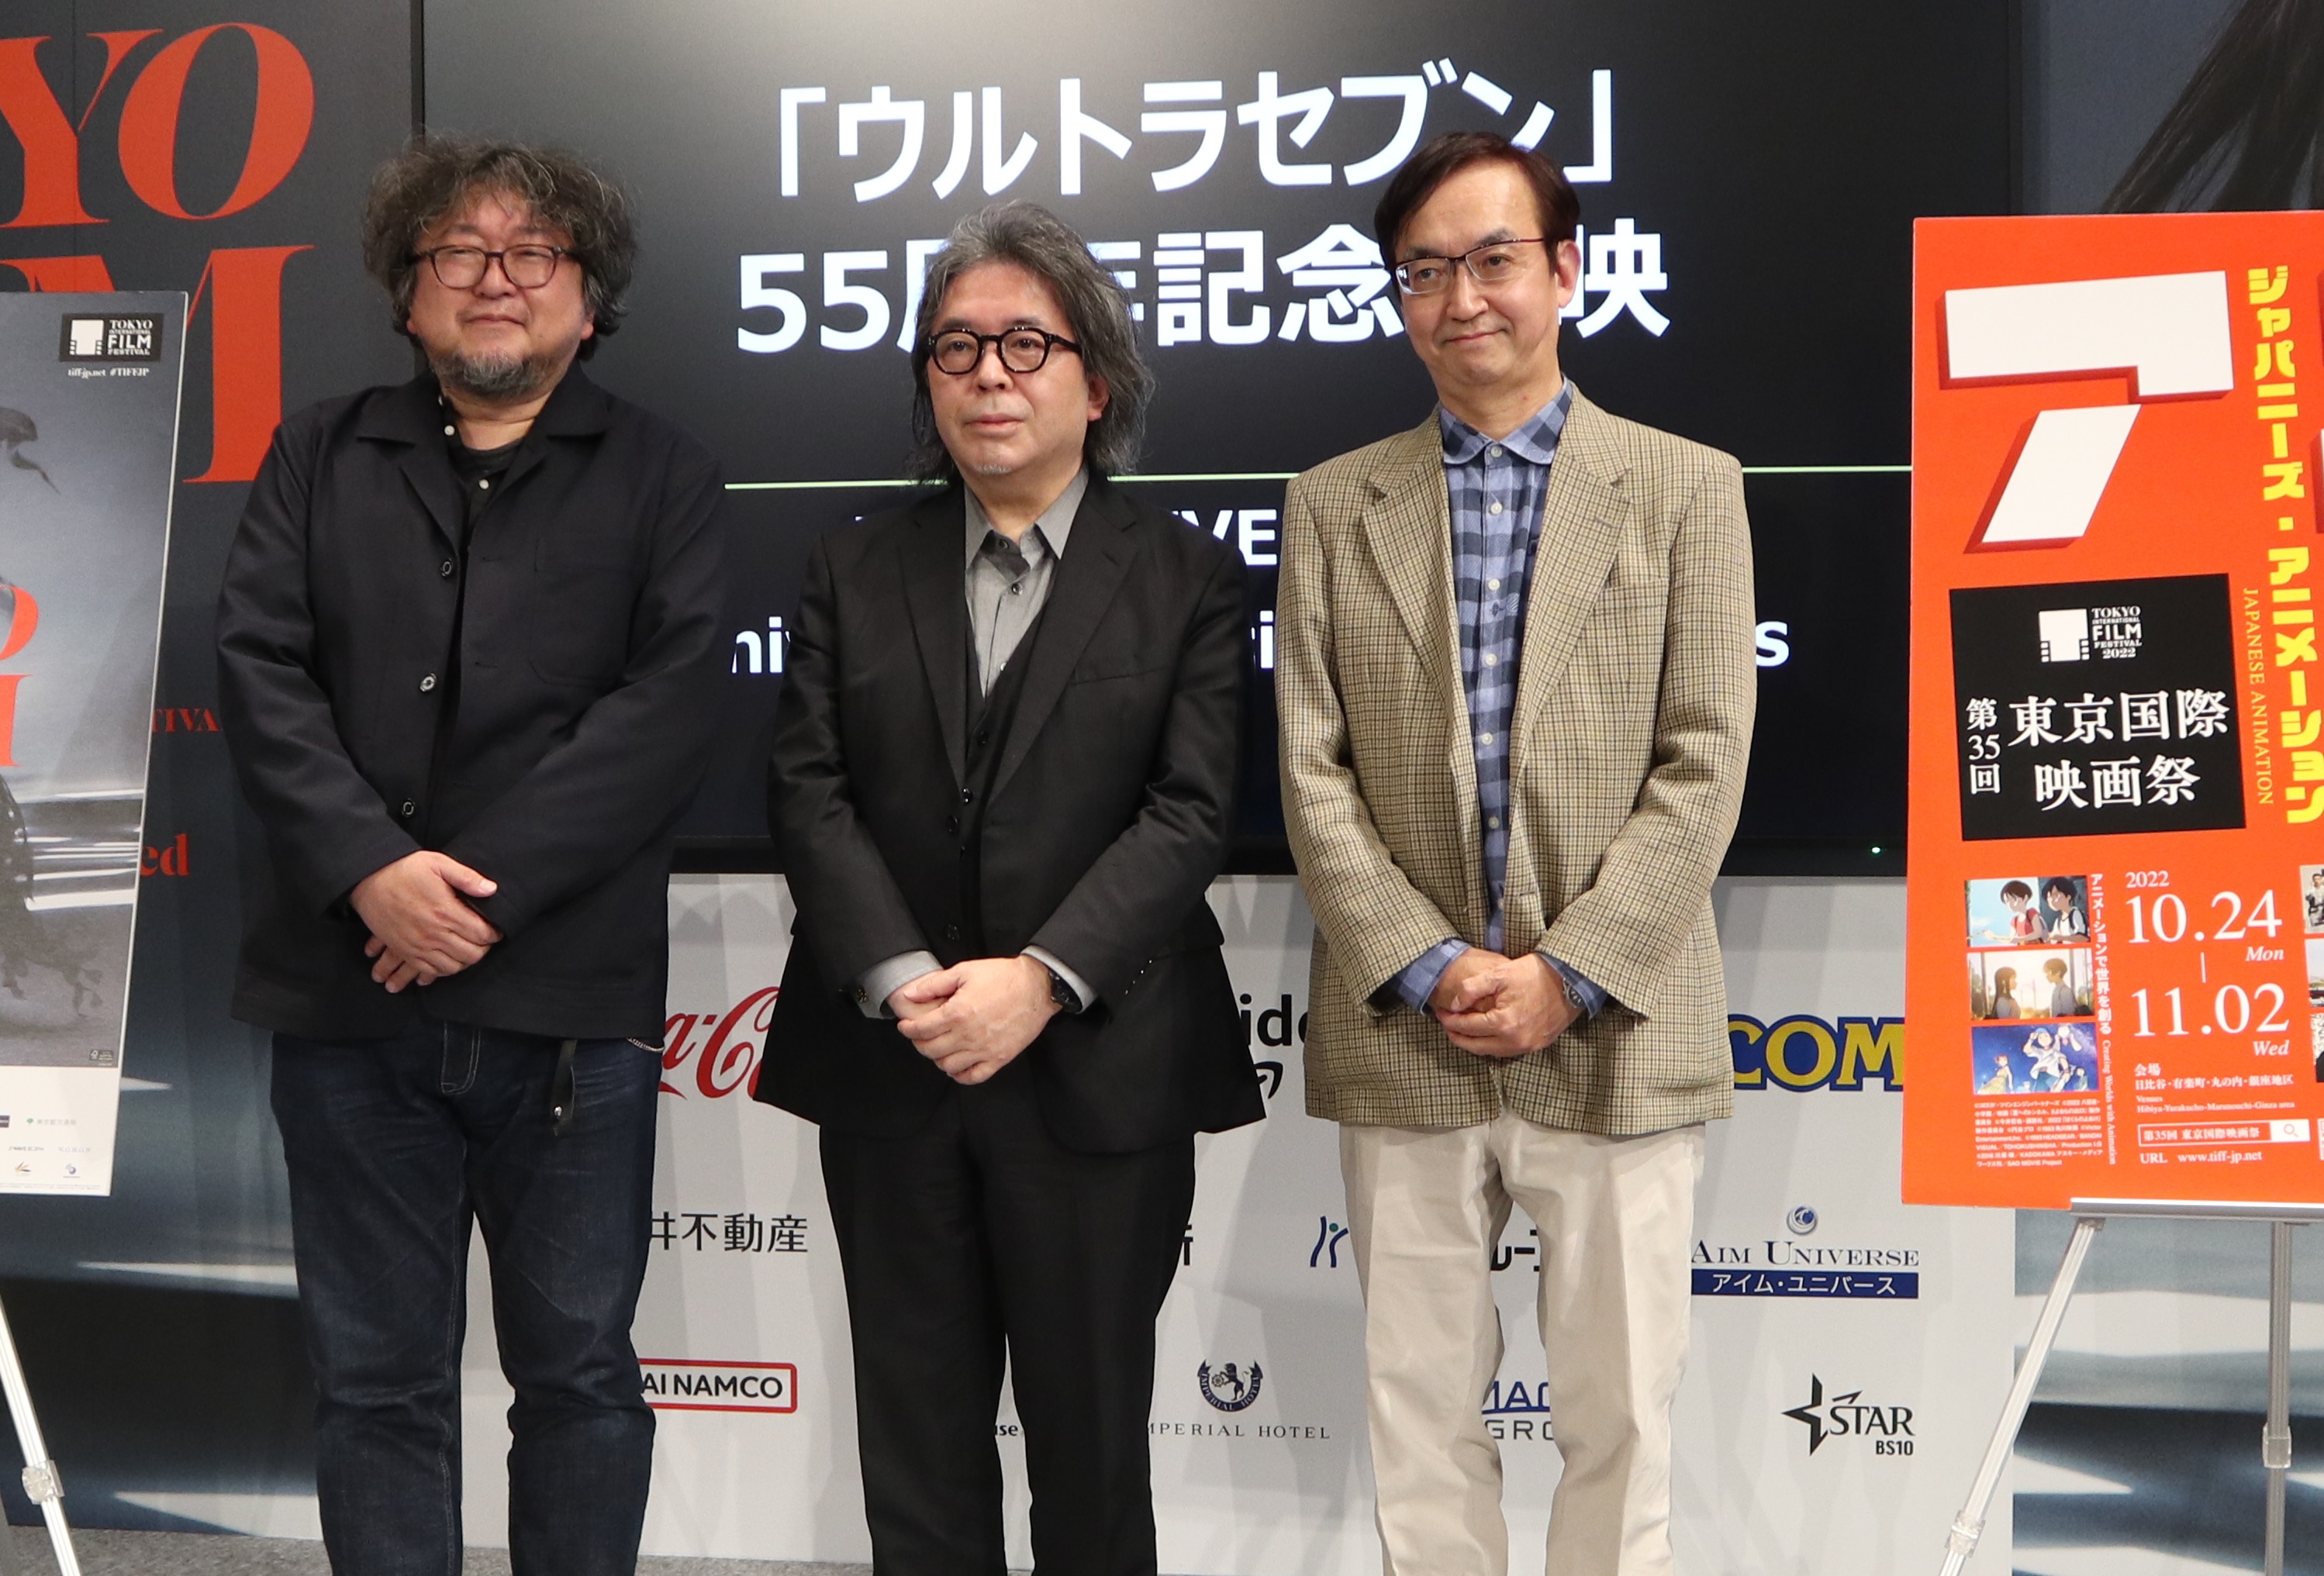 「『ウルトラセブン』55周年記念上映」のトークショーに登壇した(左から)樋口真嗣、樋口尚文、氷川竜介